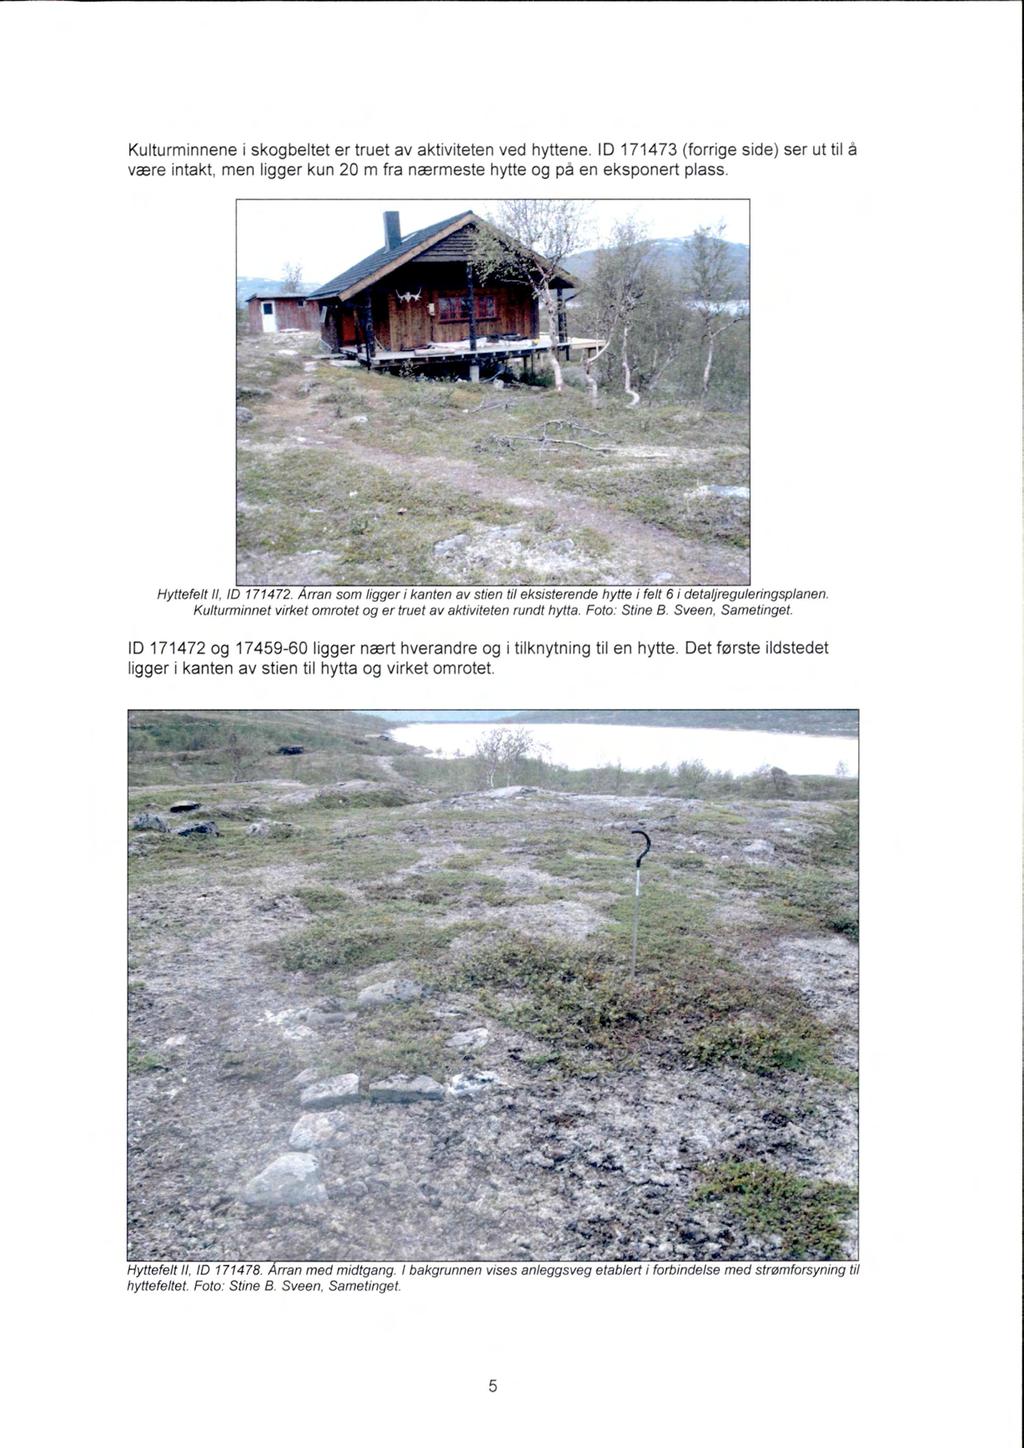 Kulturminnene i skogbeltet er truet av aktiviteten ved hyttene. ID 171473 (forrige side) ser ut til å være intakt, men ligger kun 20 m fra nærmeste hytte og på en eksponert plass.